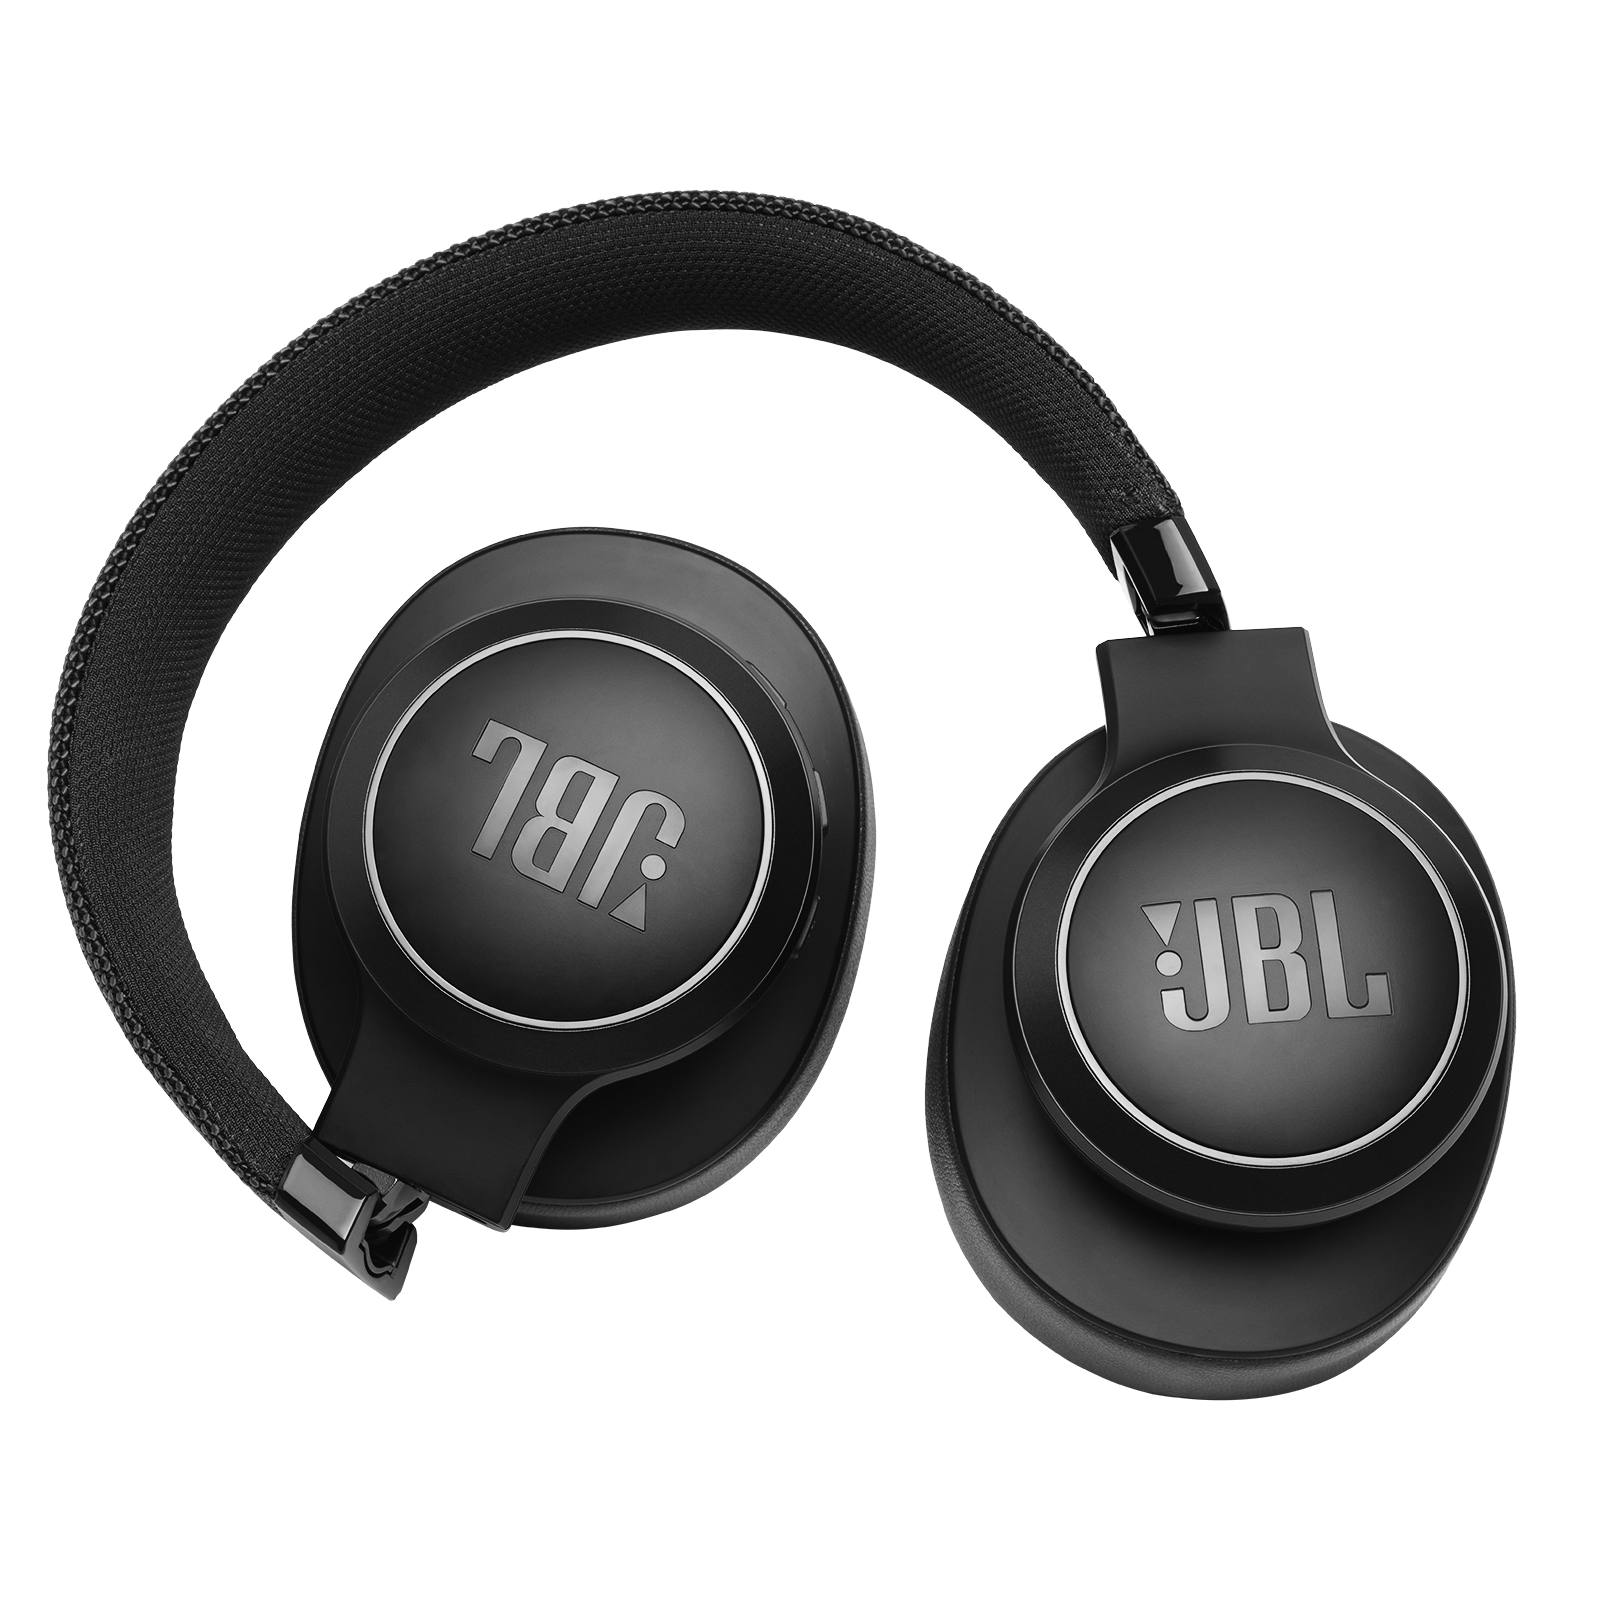 JBL LIVE 500BT - Black - Your Sound, Unplugged - Detailshot 1